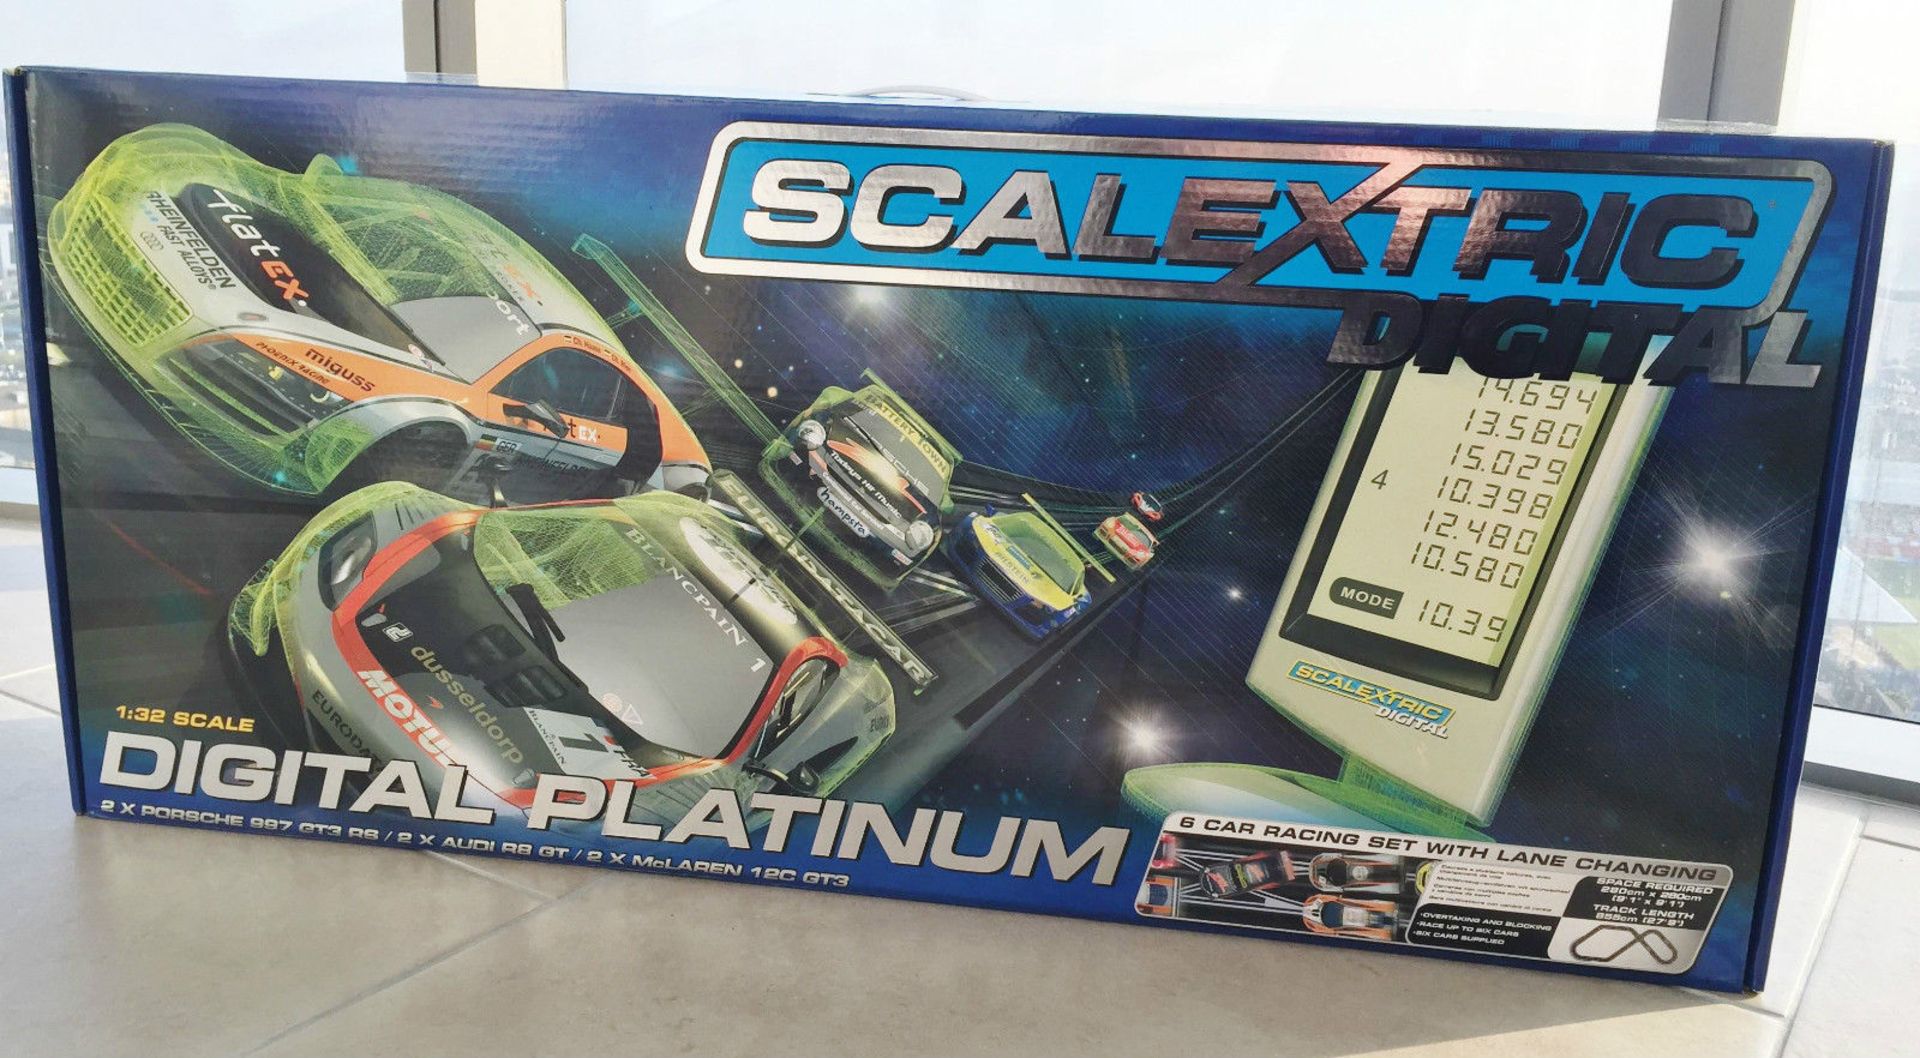 Scalextric Digital Platinum
1:32 Scale
6 cars included
New unused unopened